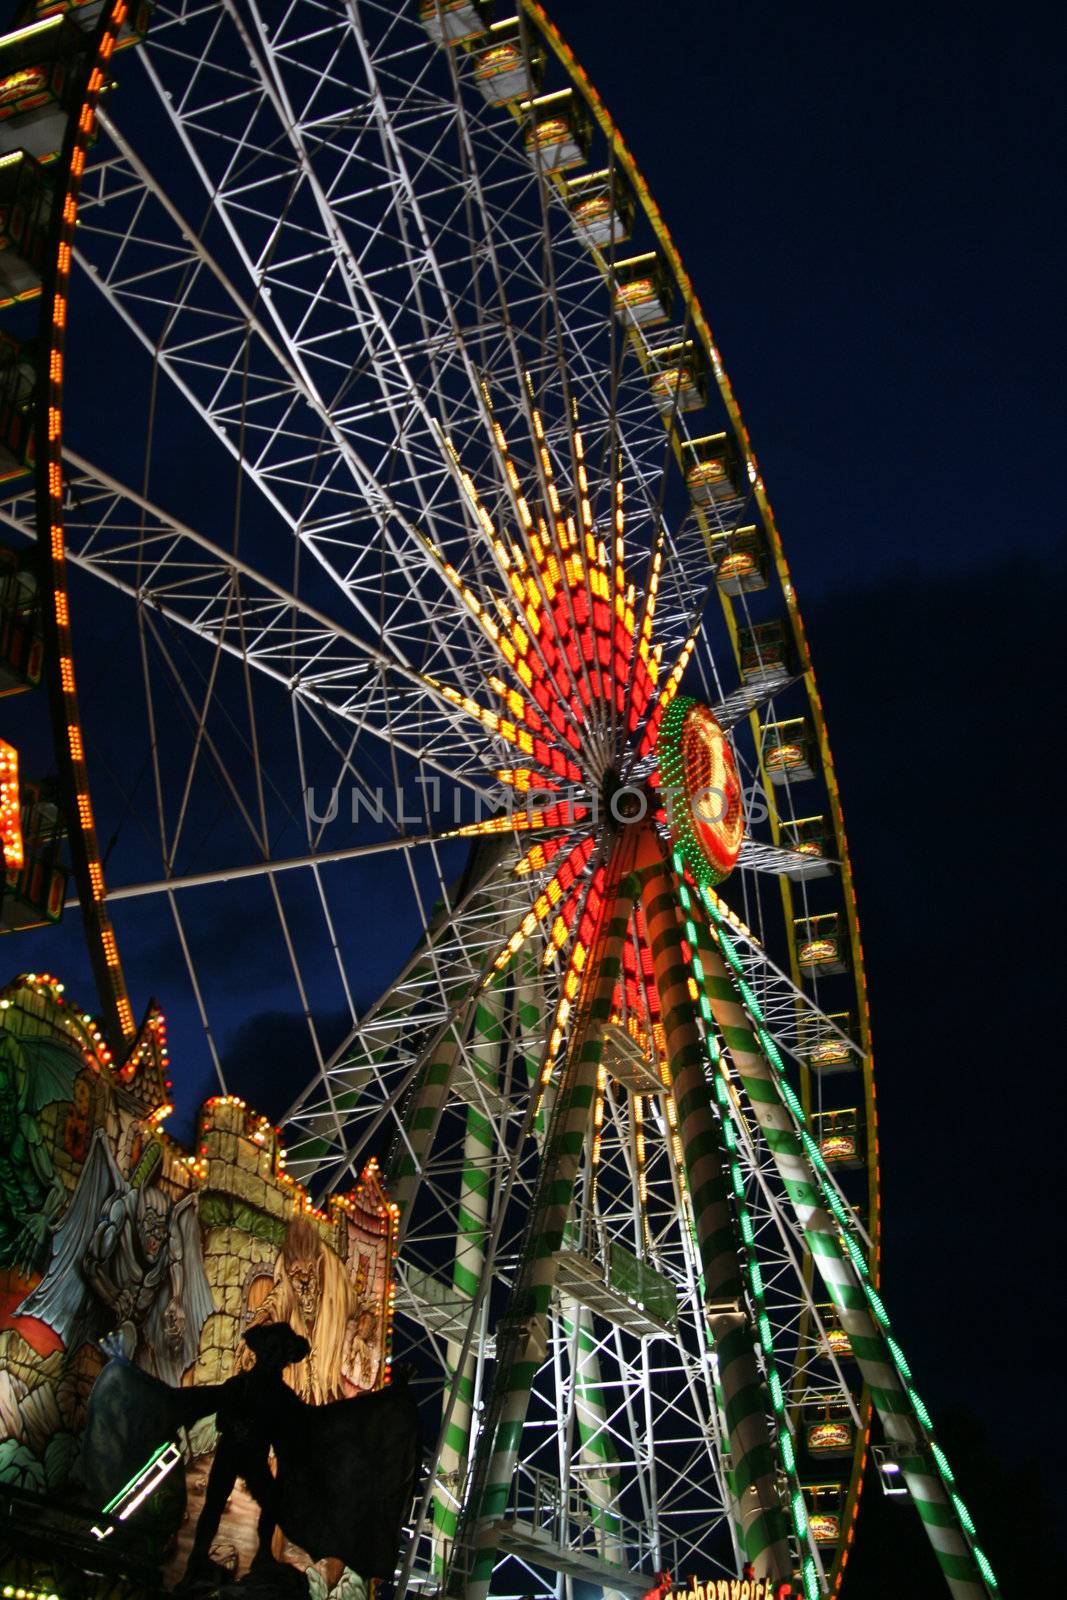 fun fair attraction ferris wheel at night